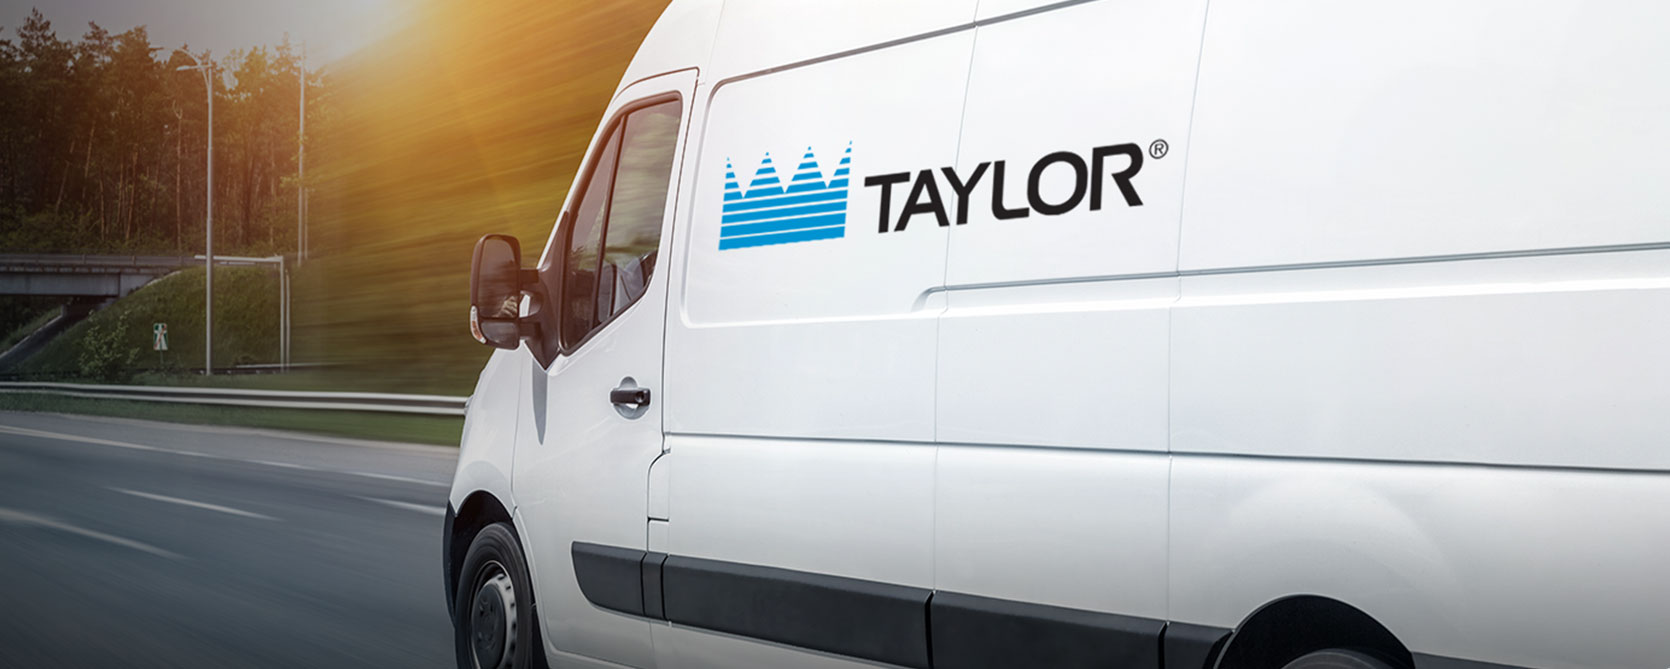 taylor service van